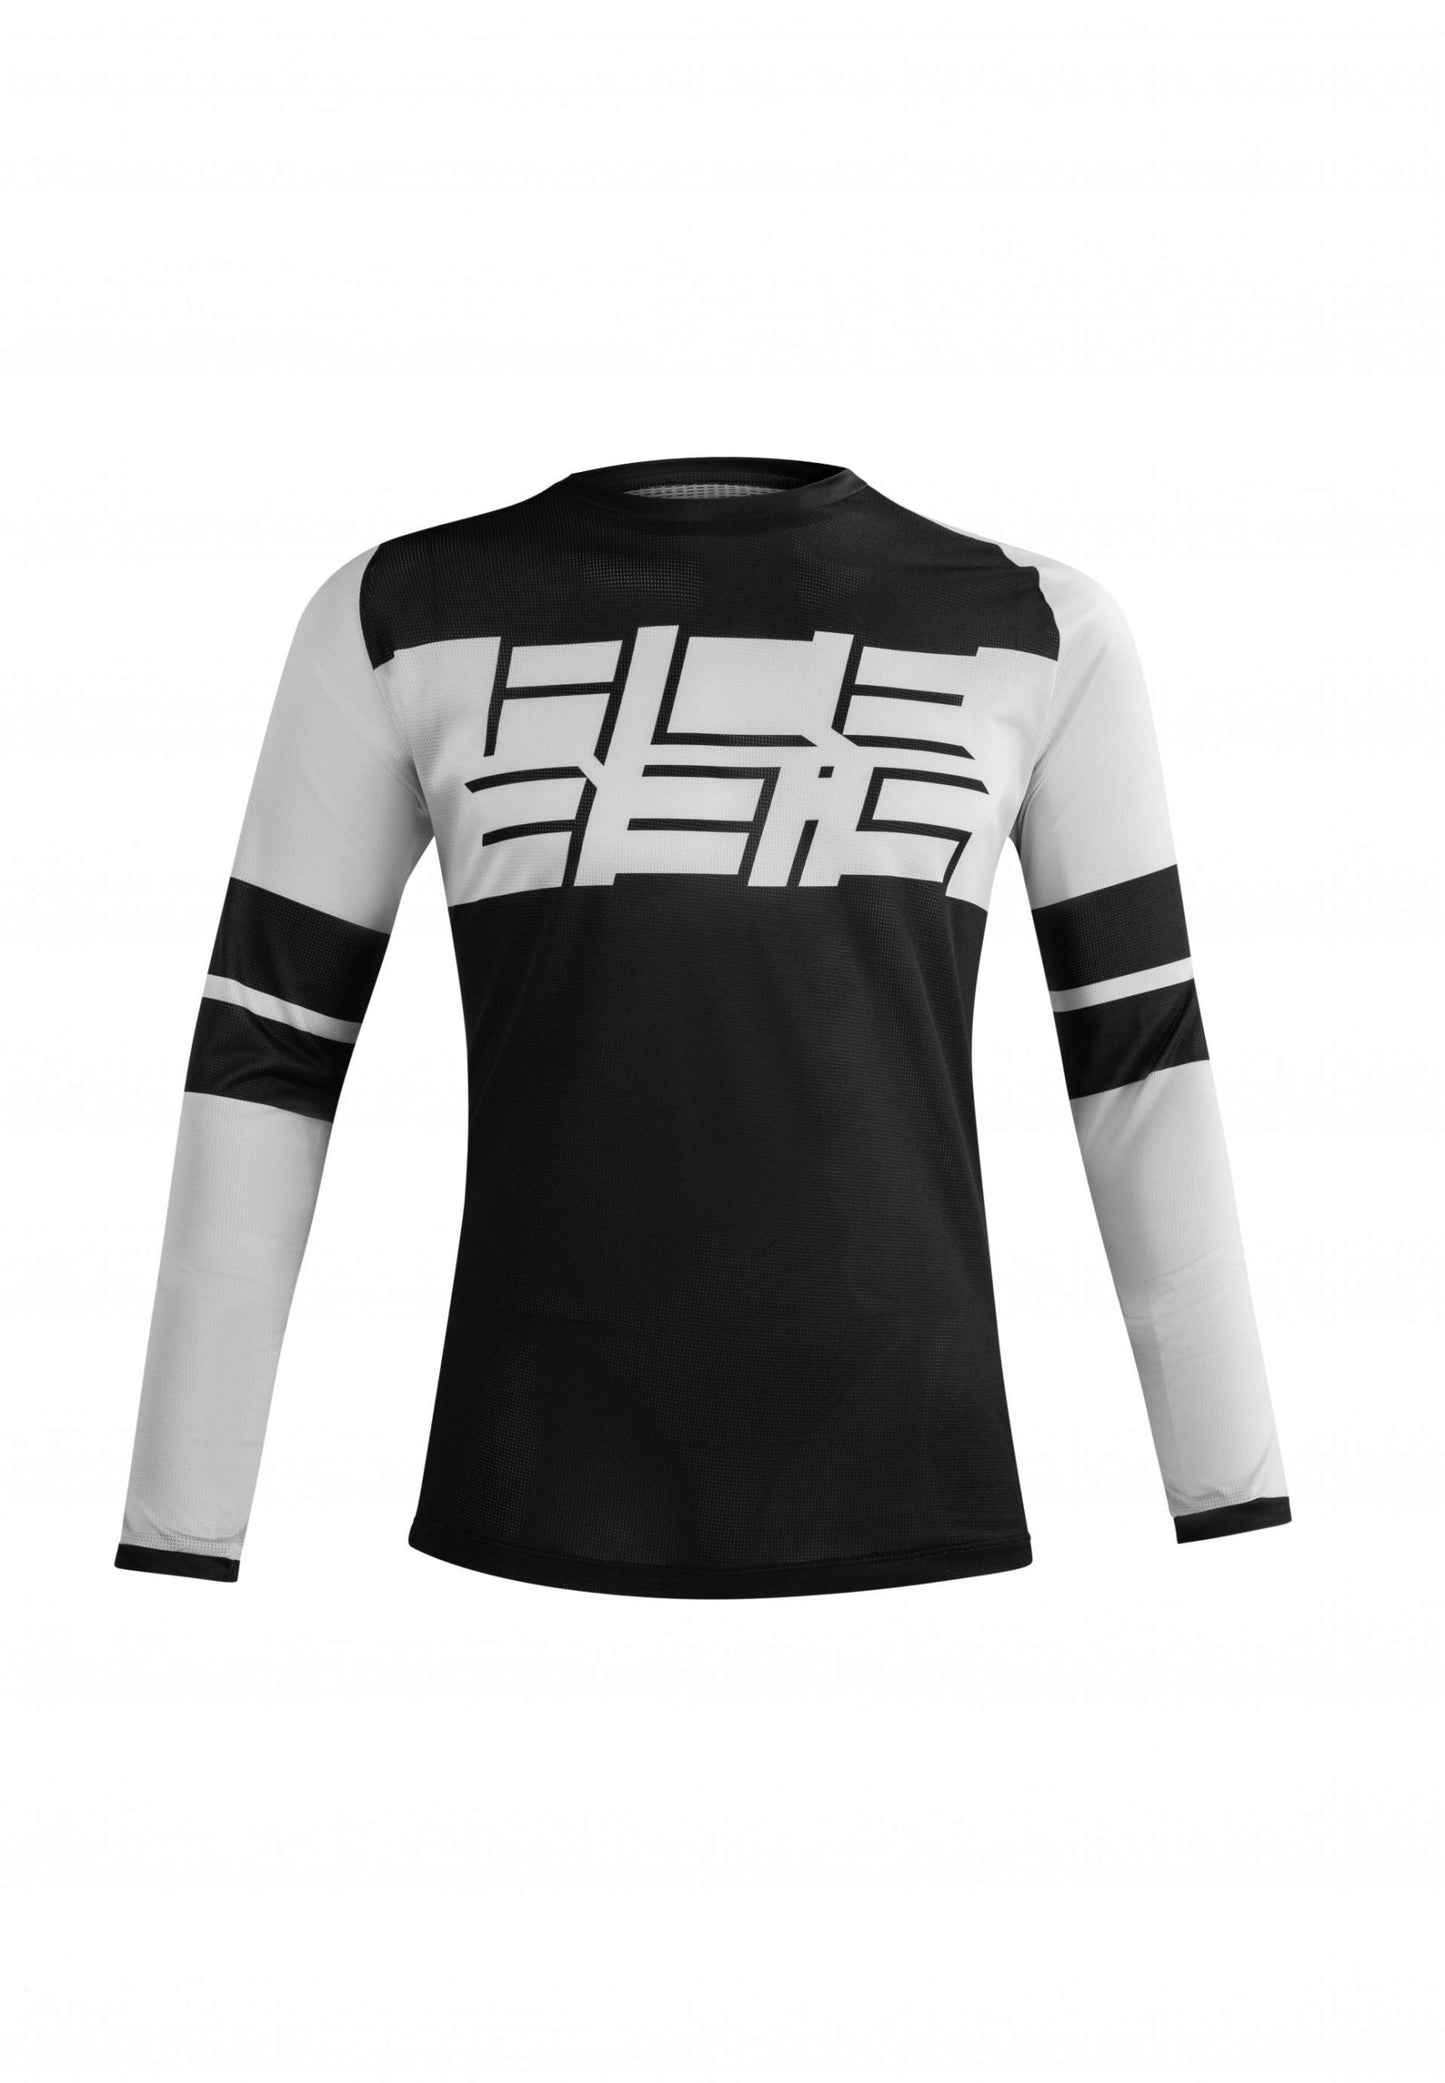 Acerbis Mtb Speeder jersey